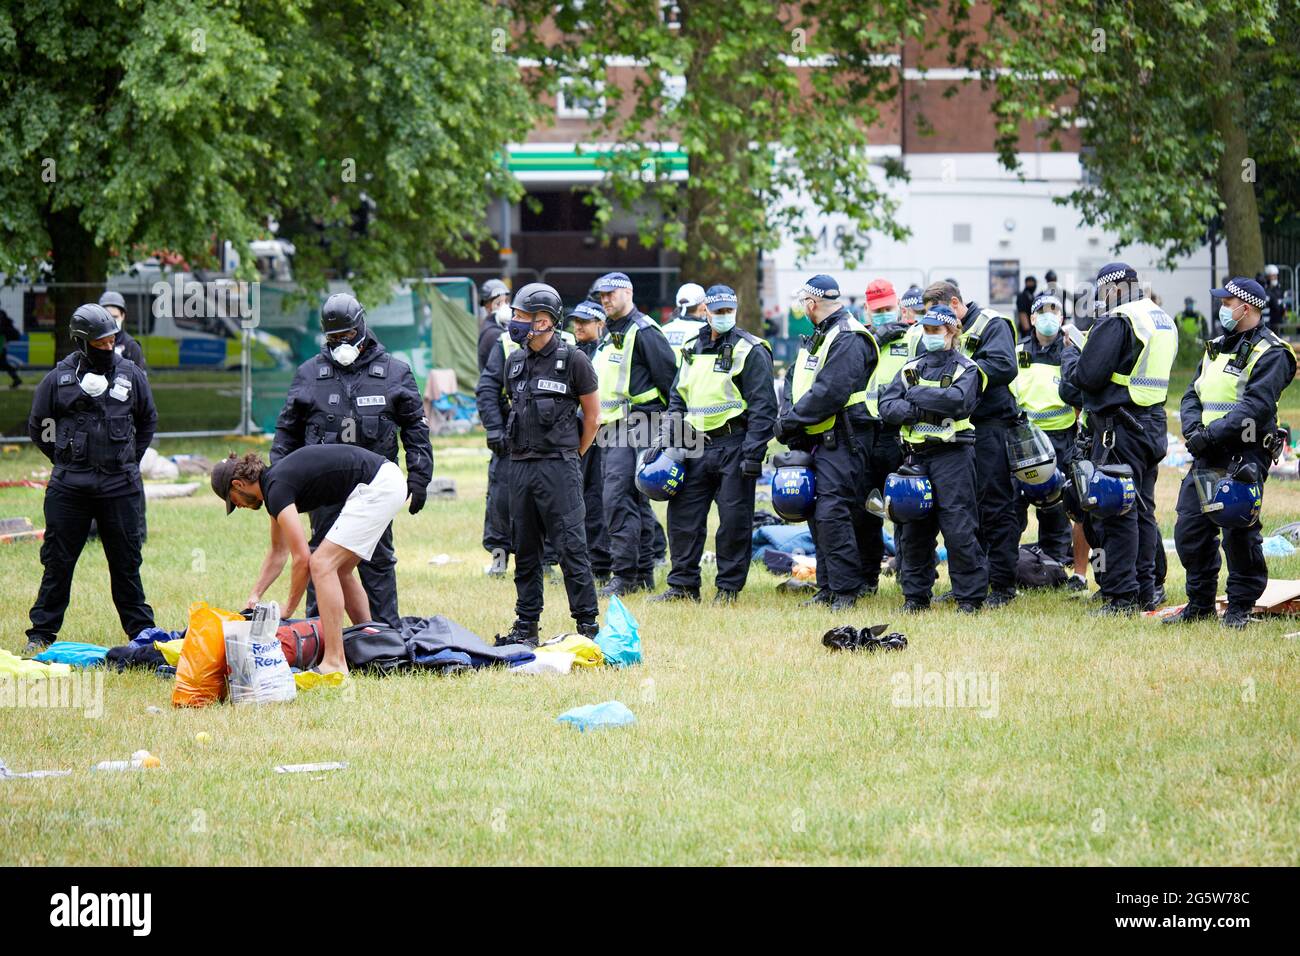 Londres, Reino Unido - 17 de junio de 2021: Los Baliffs esperan a que un manifestante embale sus pertenencias, vigilados por un gran número de policías, durante el desalojo del amoroso campo anti-encierro en Shepherds Bush Green. Foto de stock